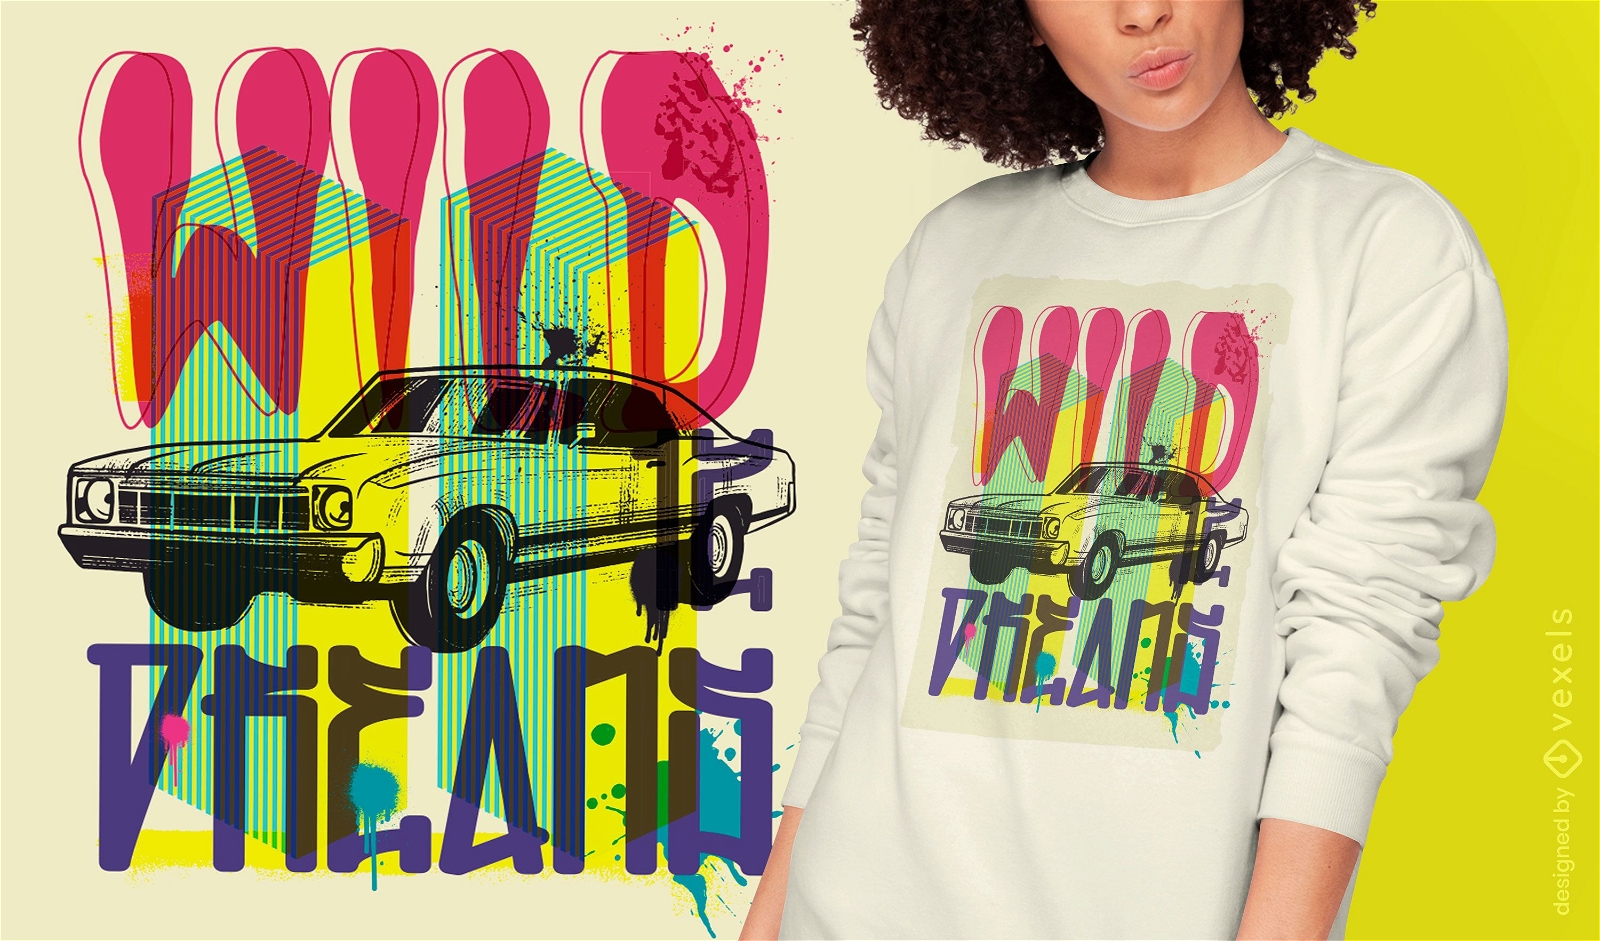 Städtisches Graffiti-T-Shirt-Design des Autofahrzeugs